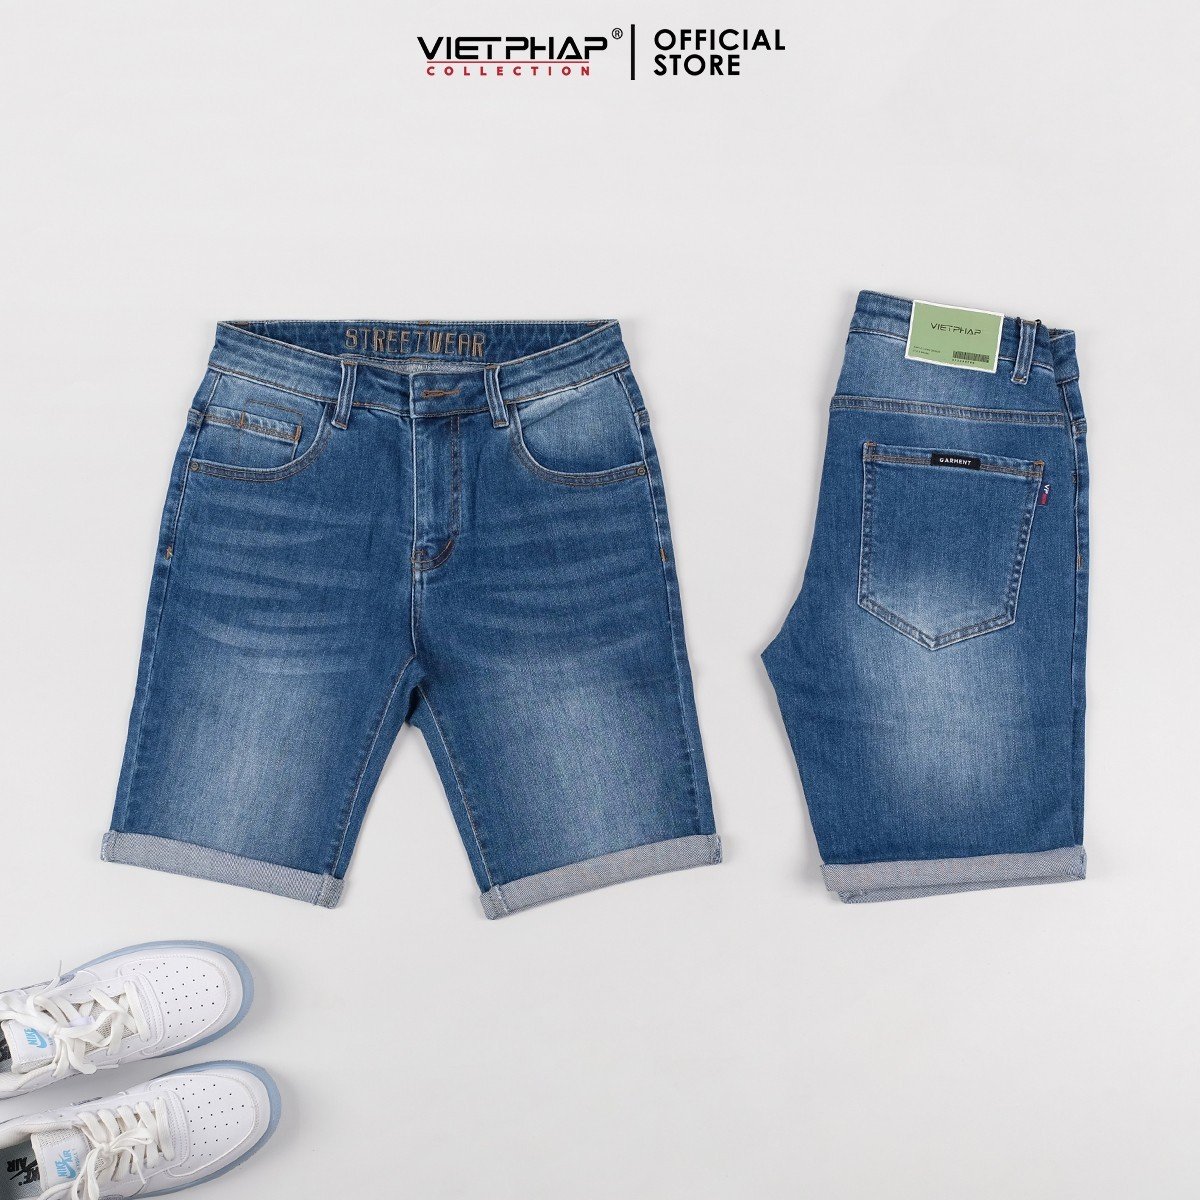 Quần Short Jeans Nam VIỆT PHÁP/ Chất Cotton Cao Cấp co giãn, độ bền màu cao 0410